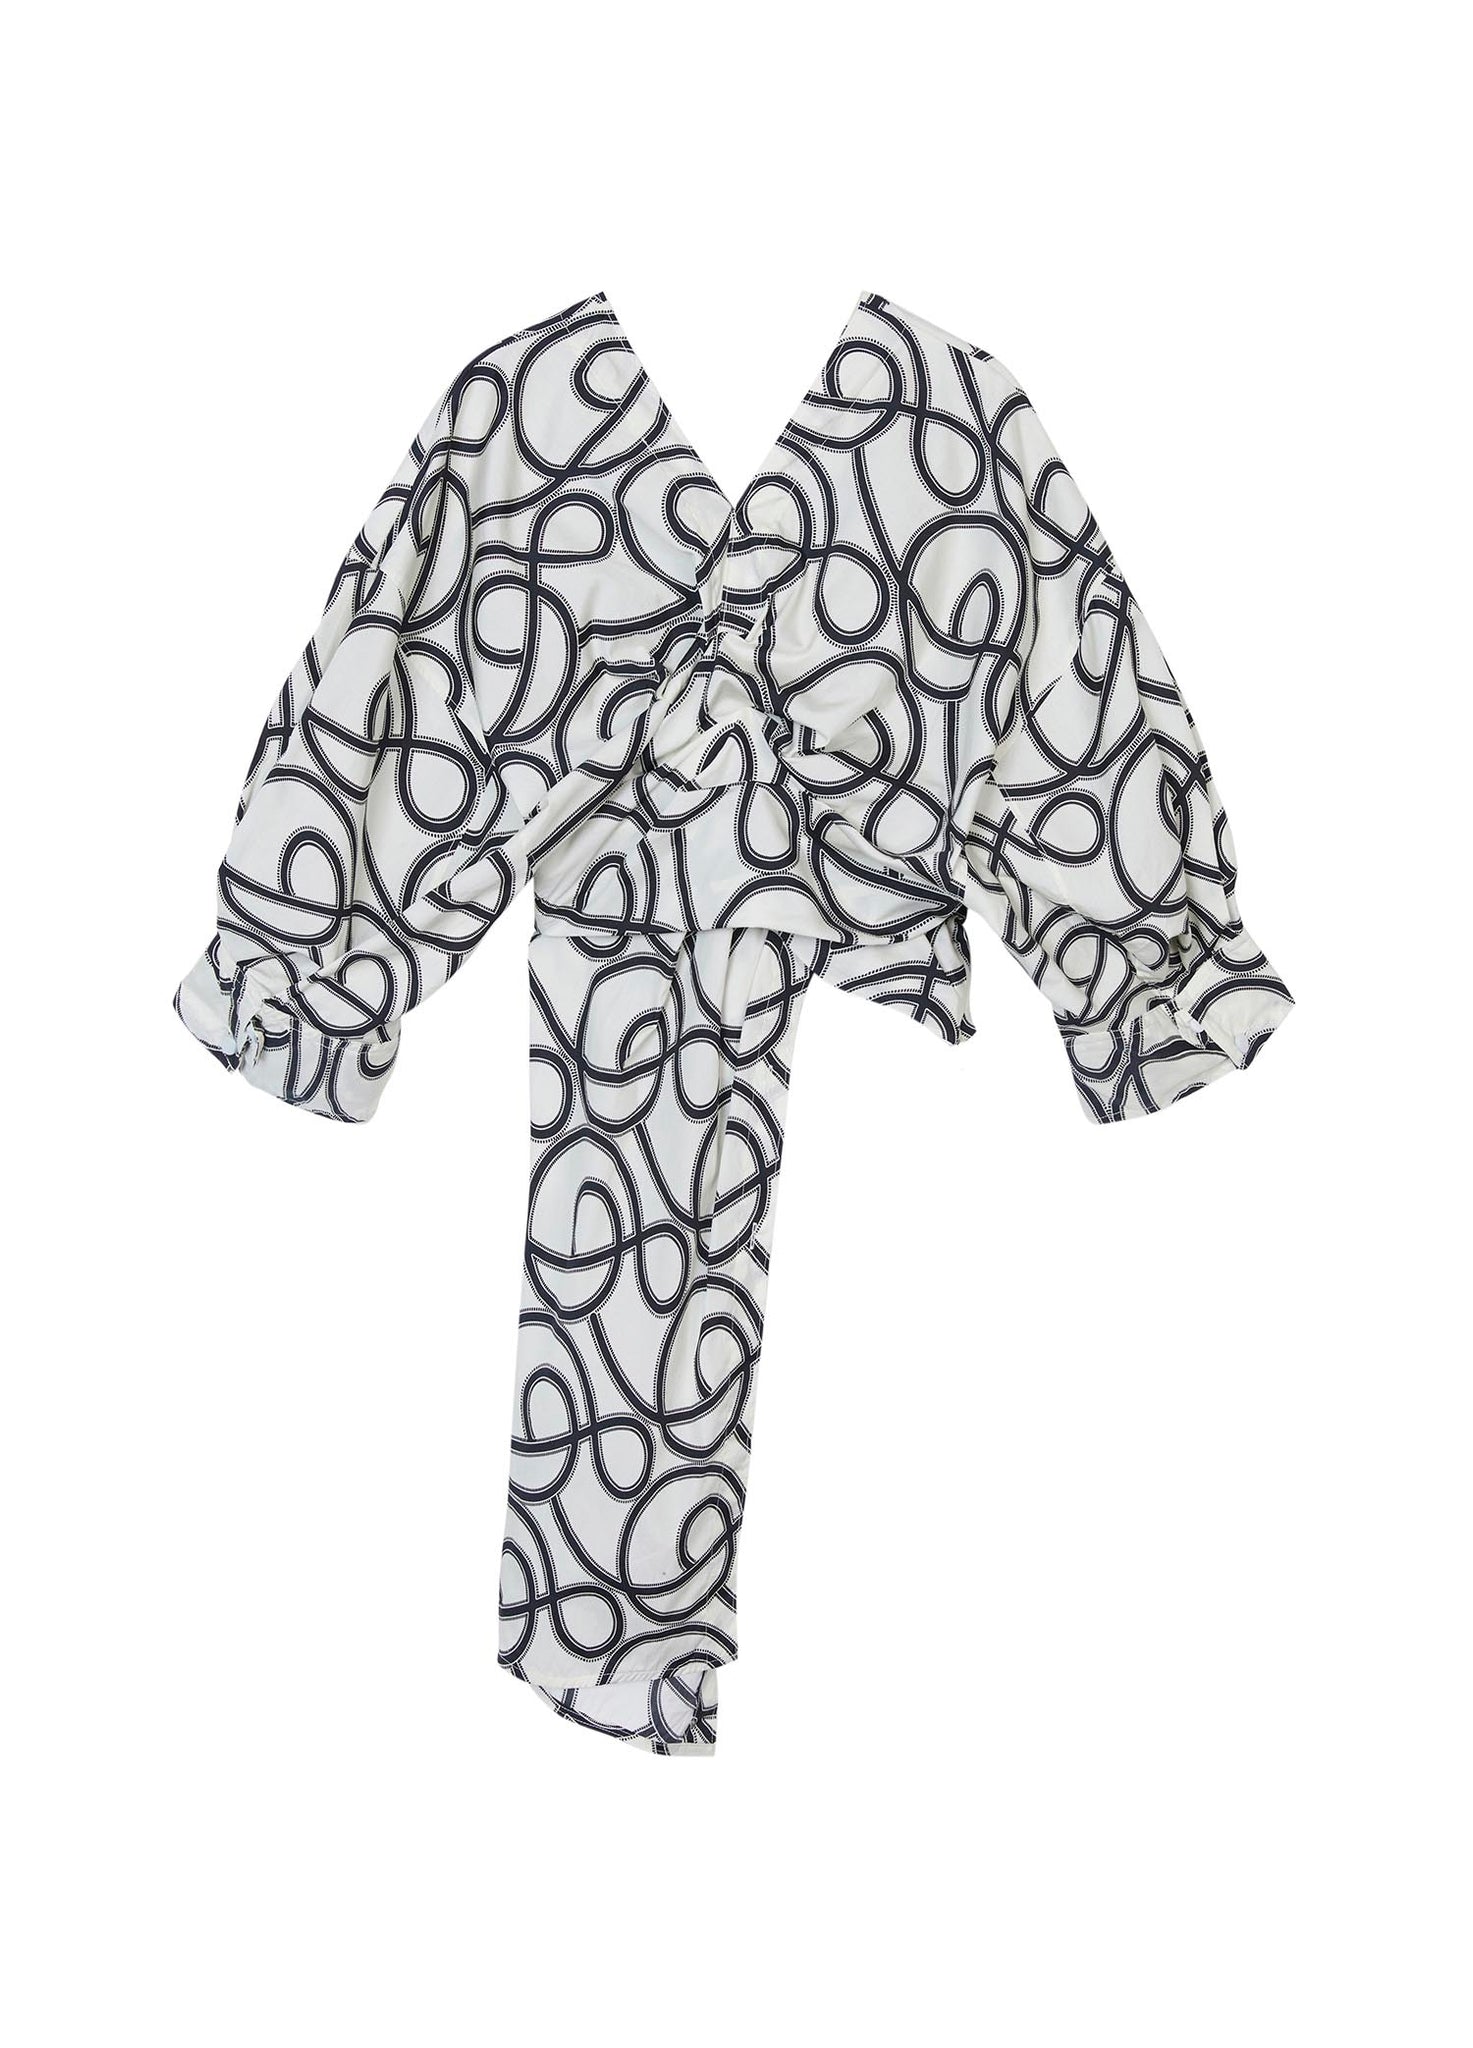 Shirt / JNBY Asymmetric Full Print V-Neck Top (100% Cotton)